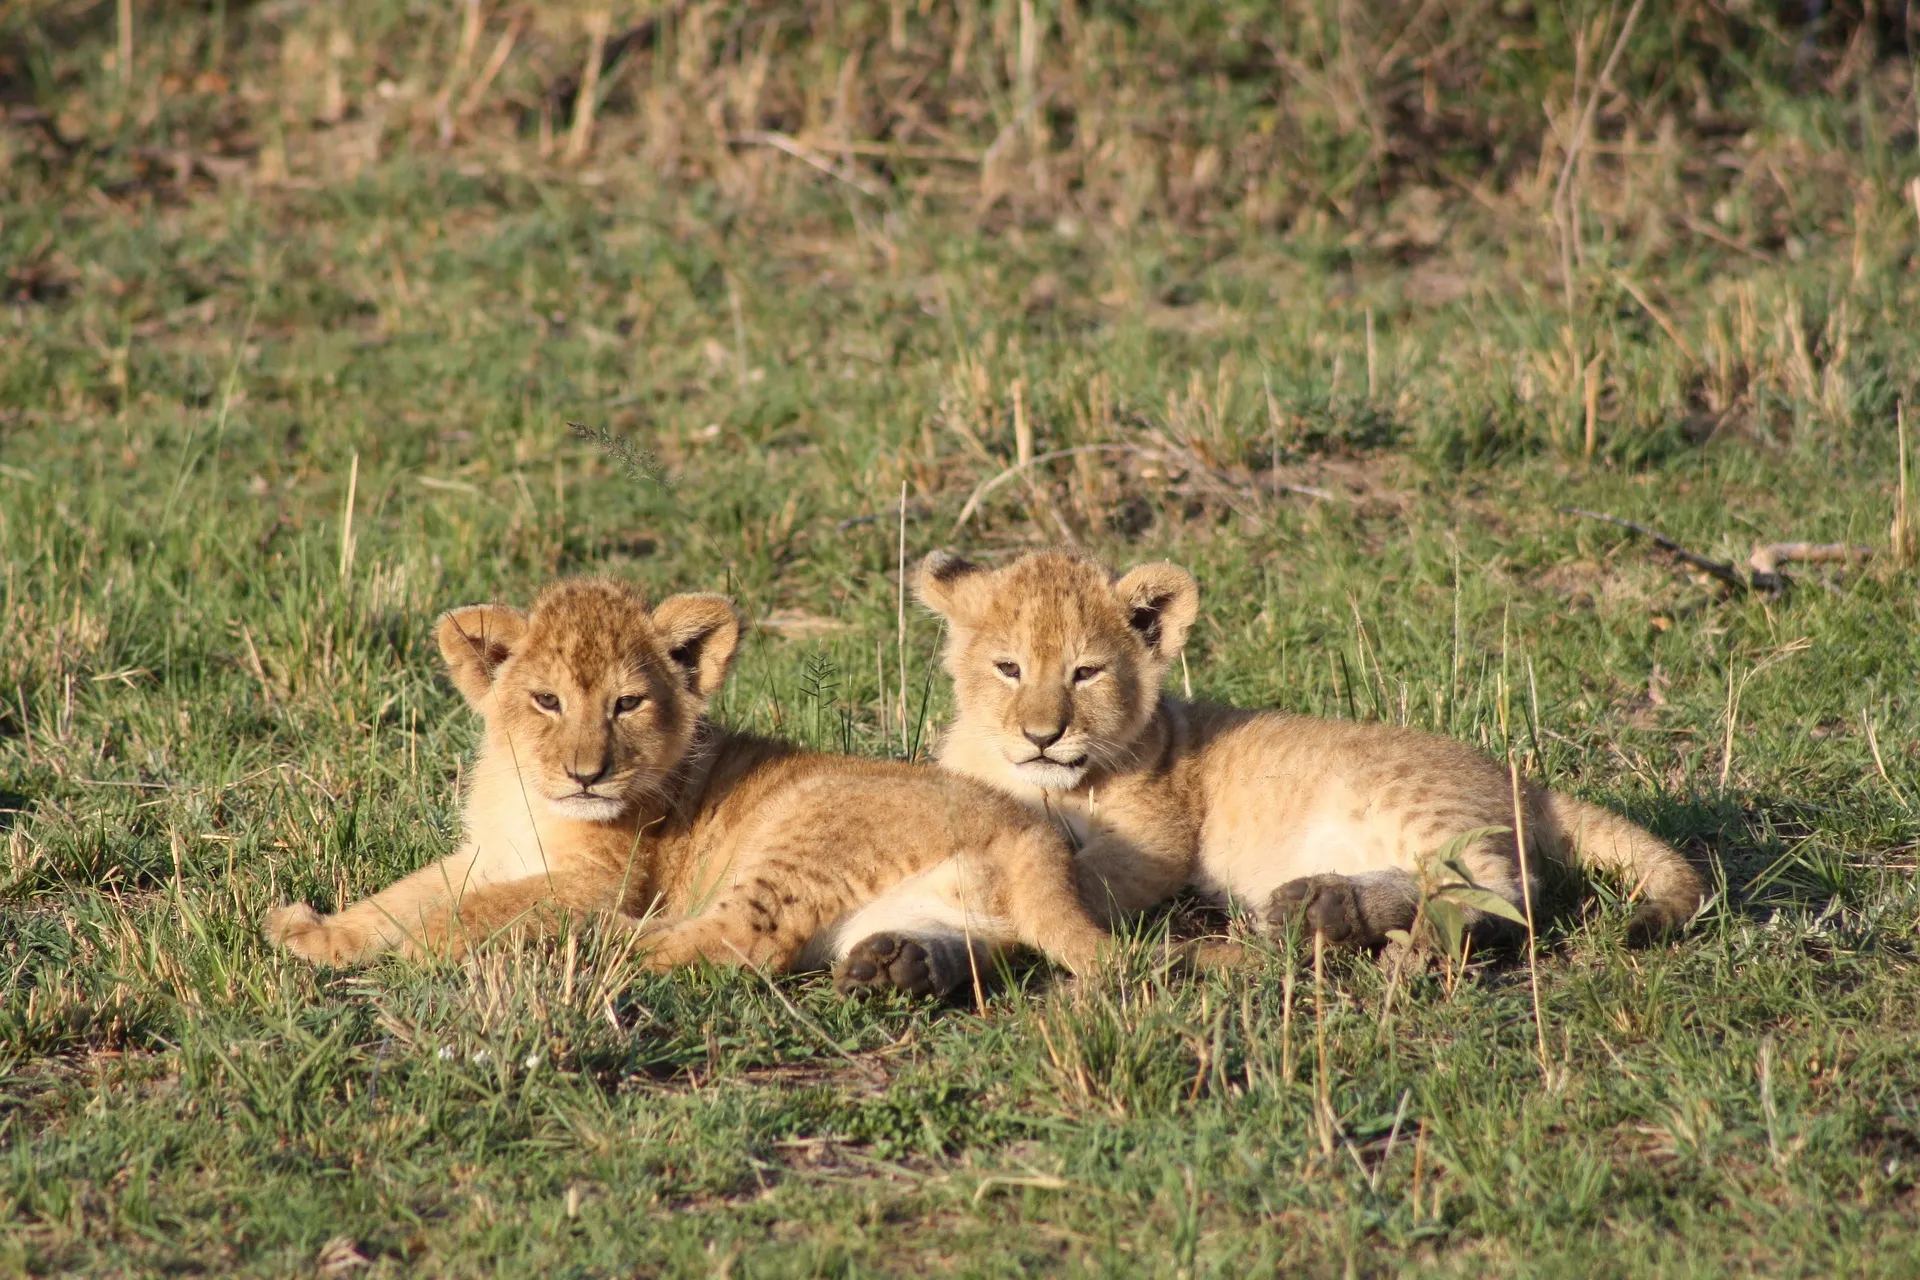 safaris to tanzania - cubs